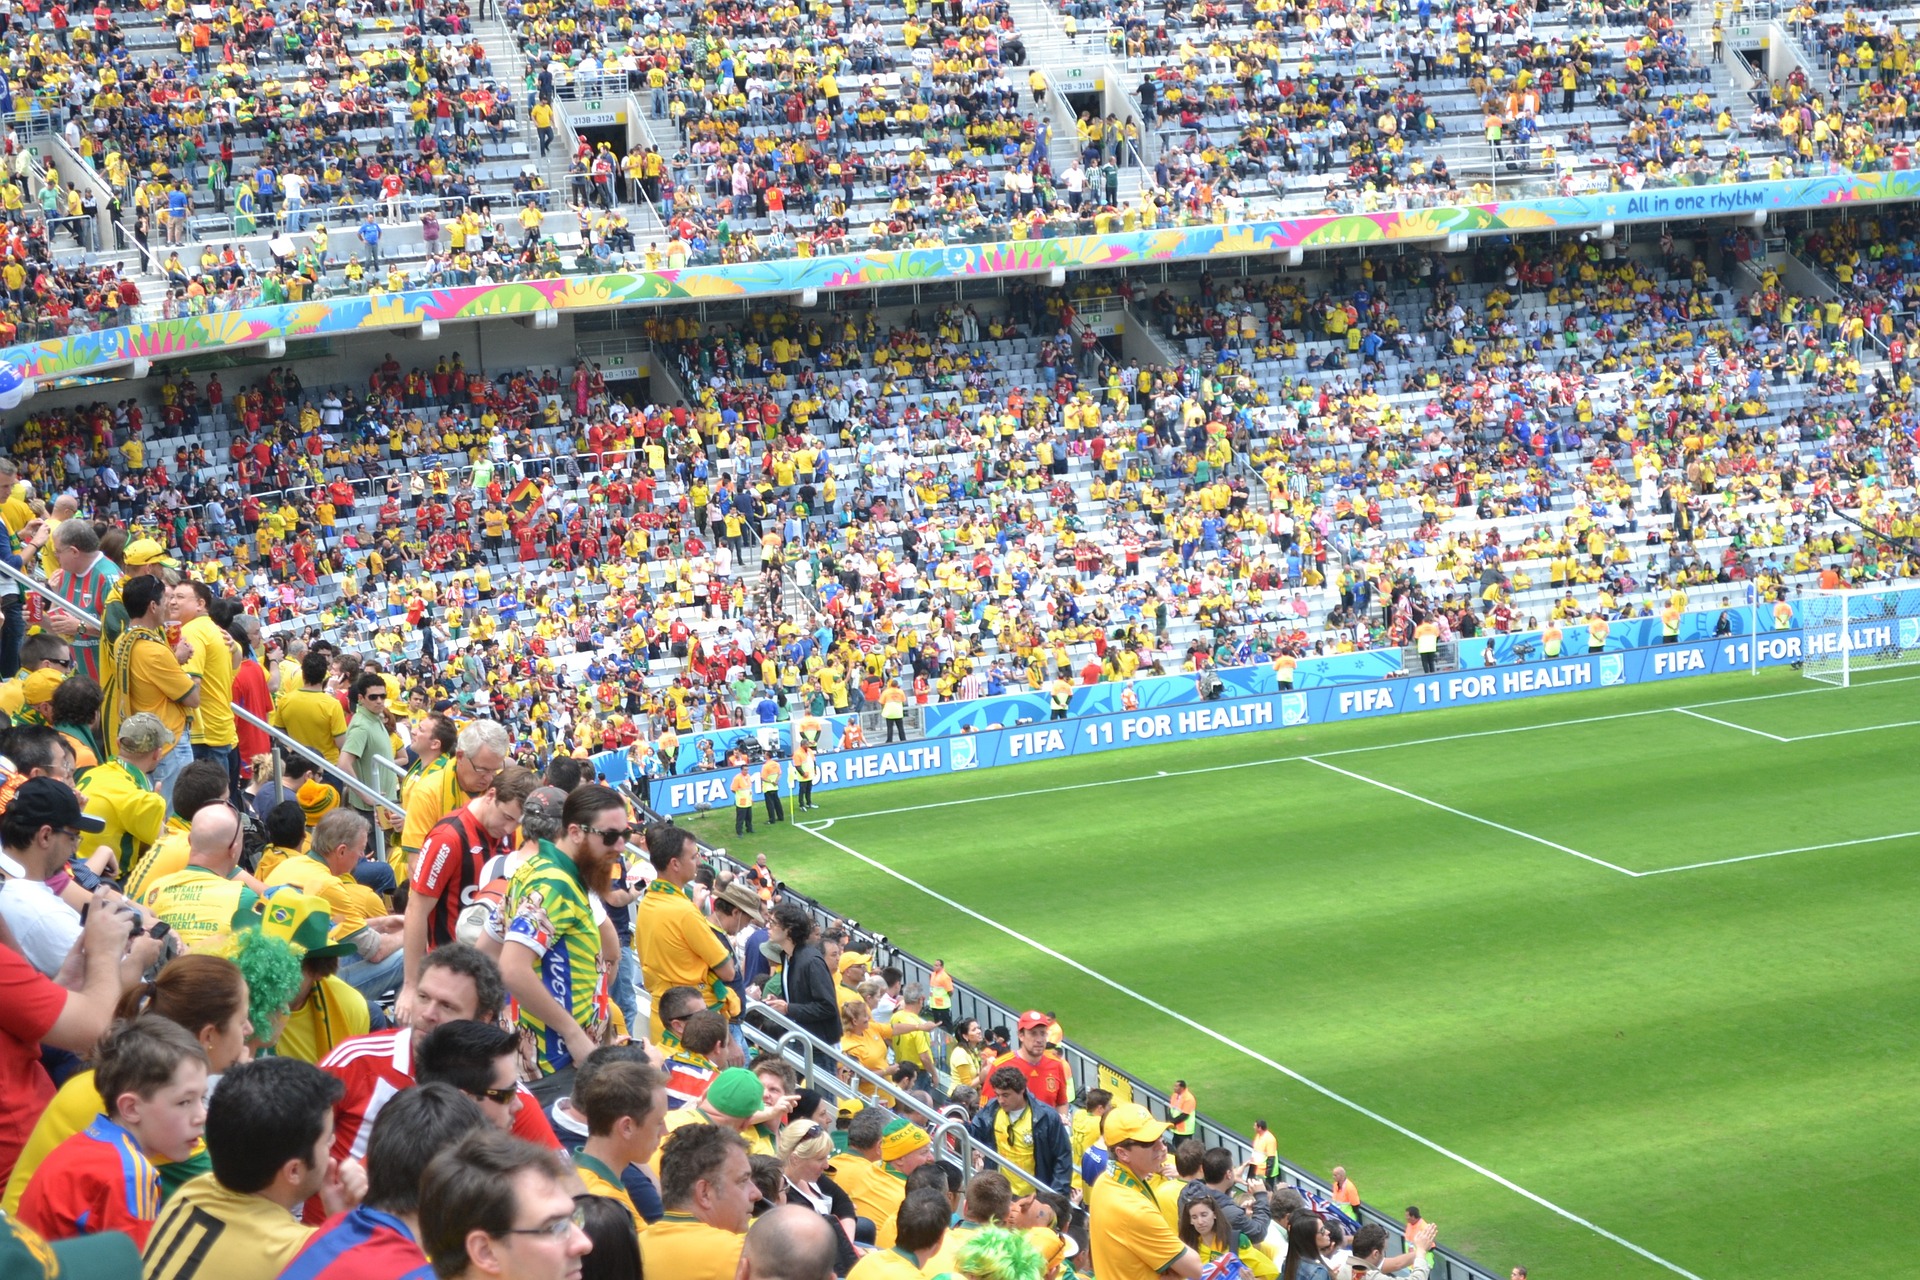 Torcida acompanha das arquibancadas uma partida de futebol. Créditos: Pixabay.